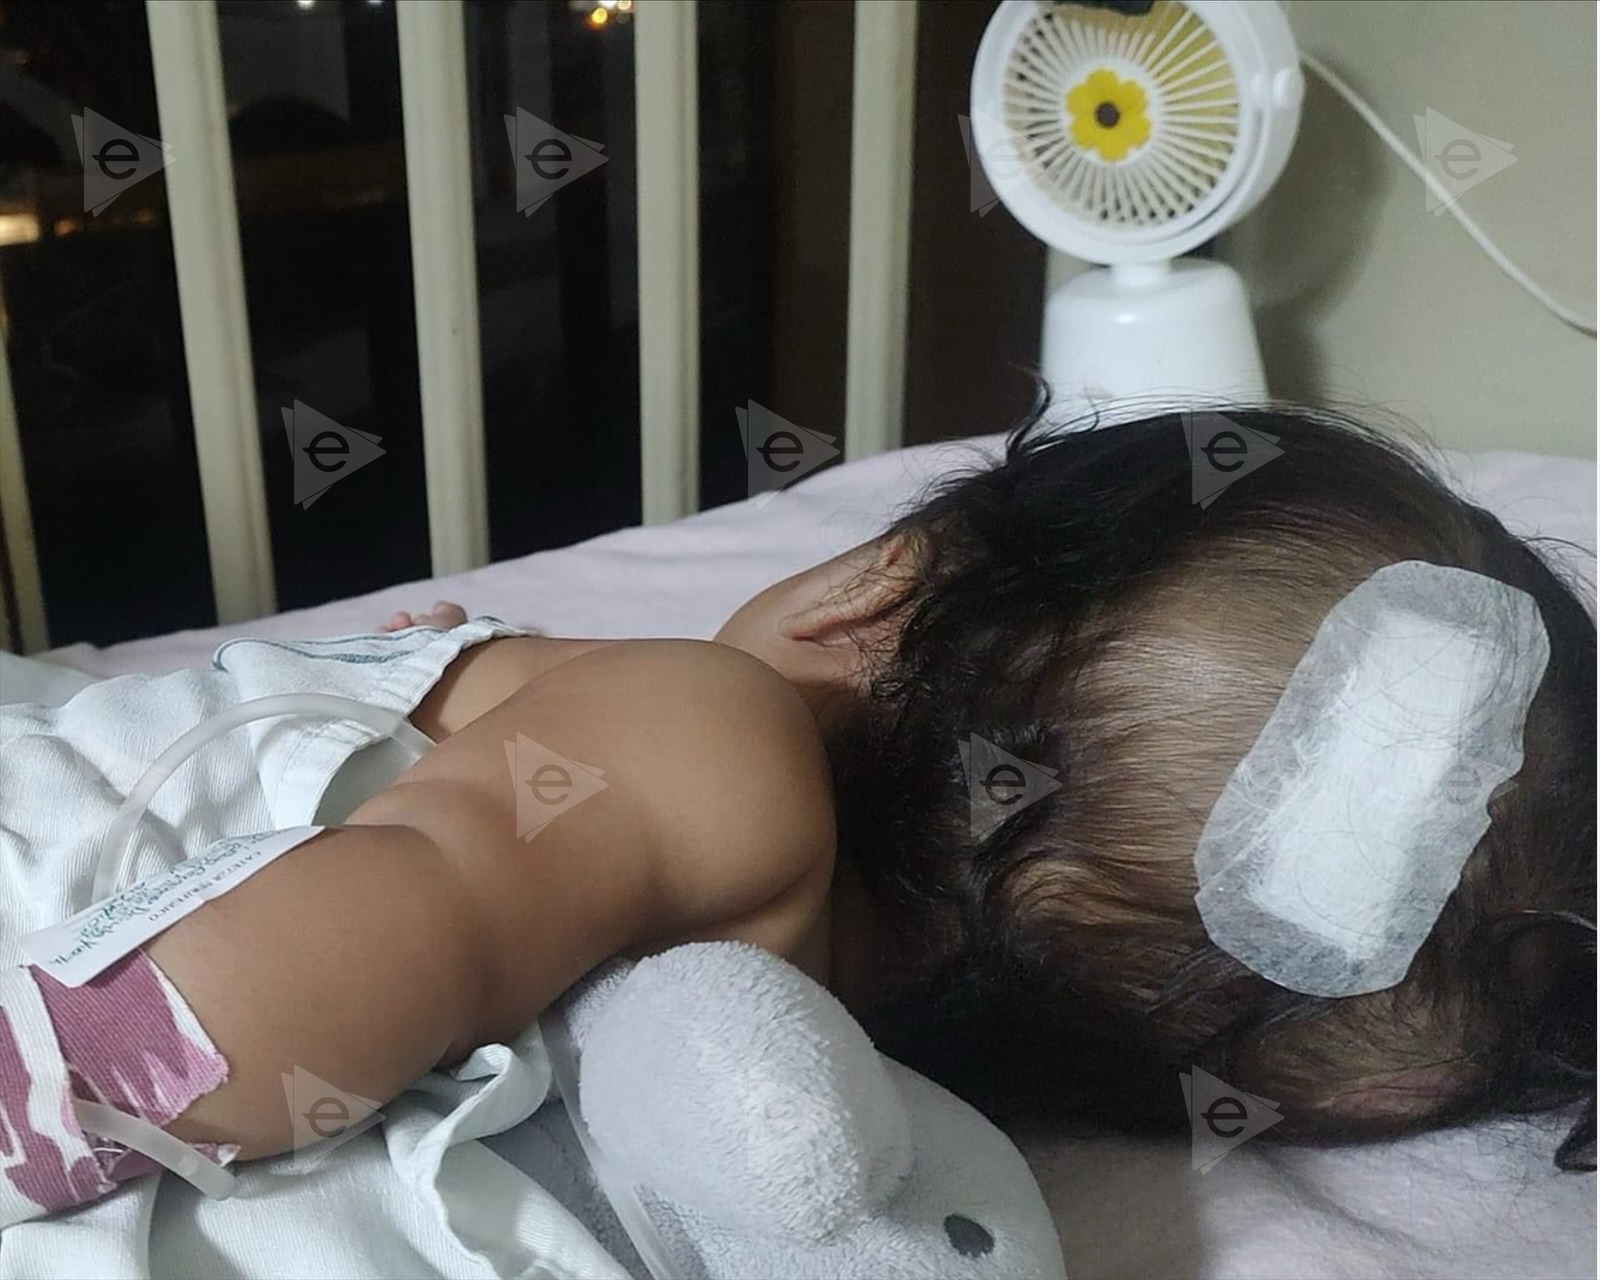 Bebé requiere traslado urgente a Madero; piden apoyo para pagar ambulancia